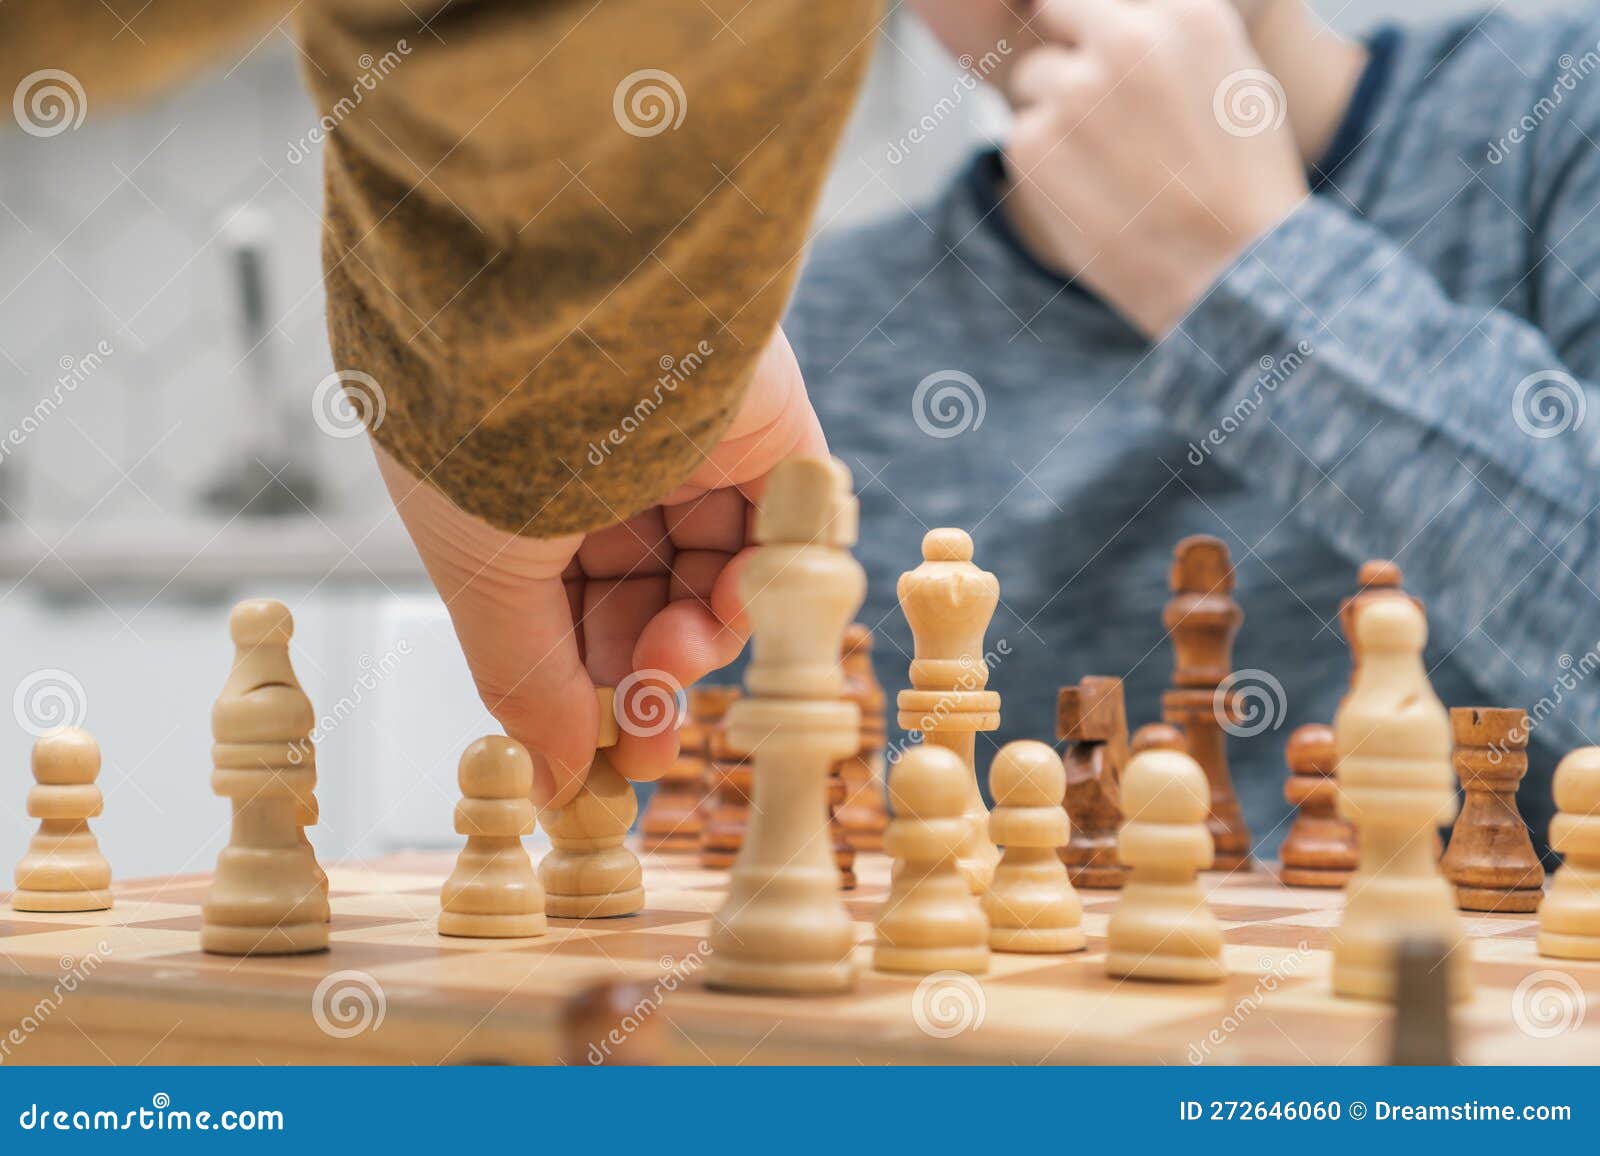 Jogando xadrez de madeira. peão branco contra o resto das figuras